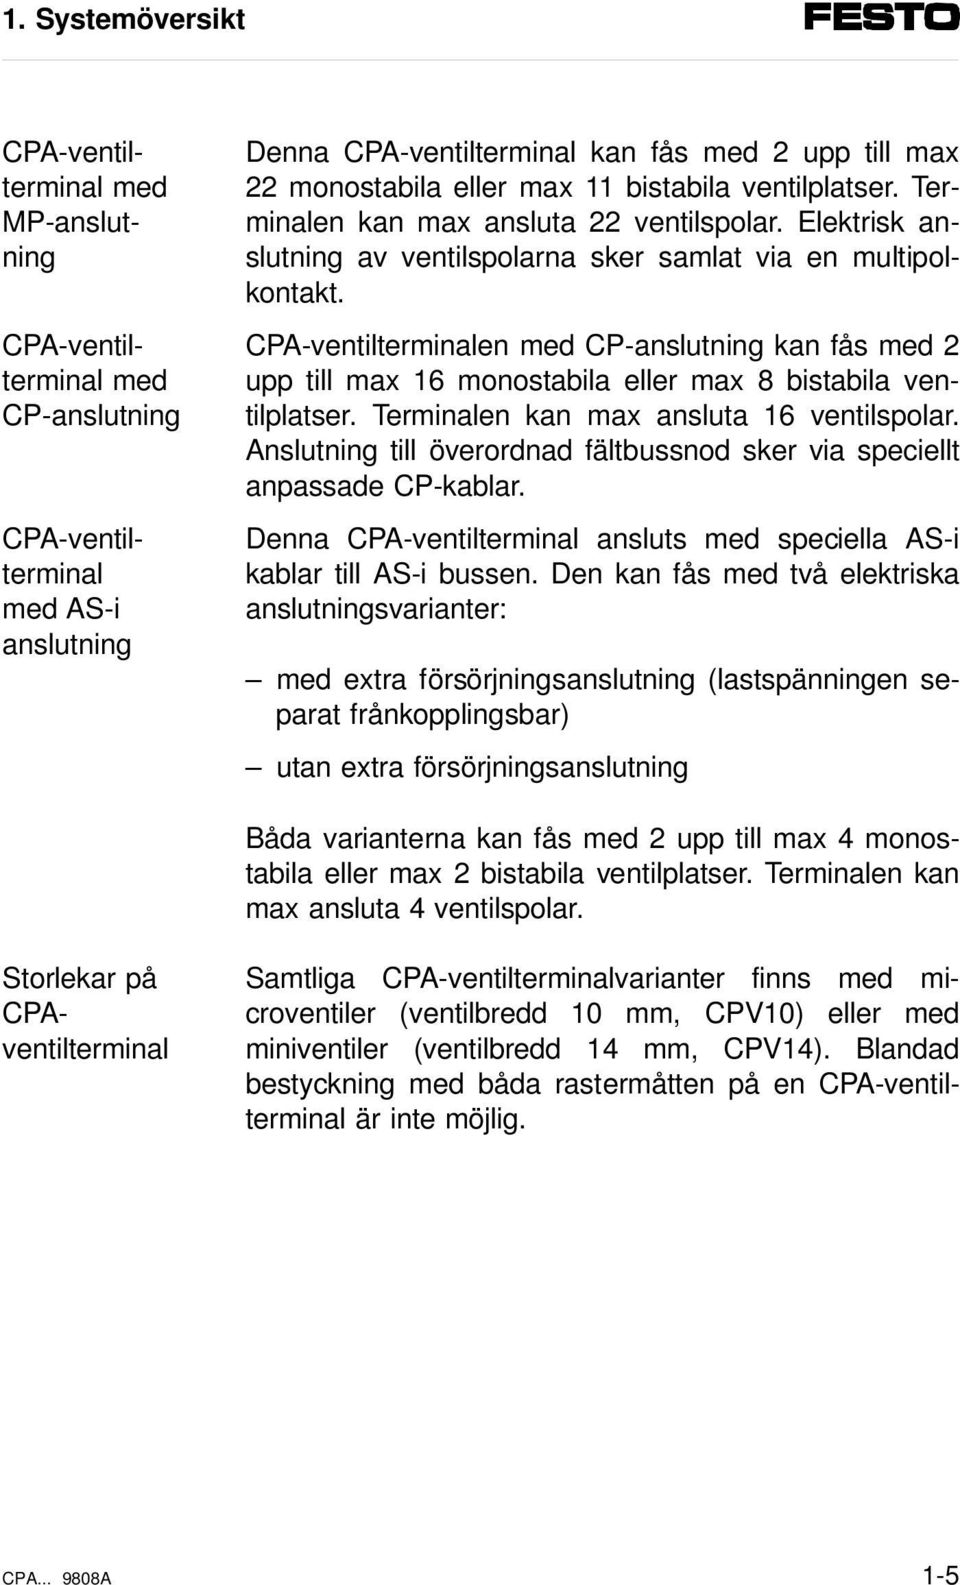 CPA-ventilterminal med MP-anslutning CPA-ventilterminal med CP-anslutning CPA-ventilterminal med AS-i anslutning CPA-ventilterminalen med CP-anslutning kan fås med 2 upp till max 16 monostabila eller